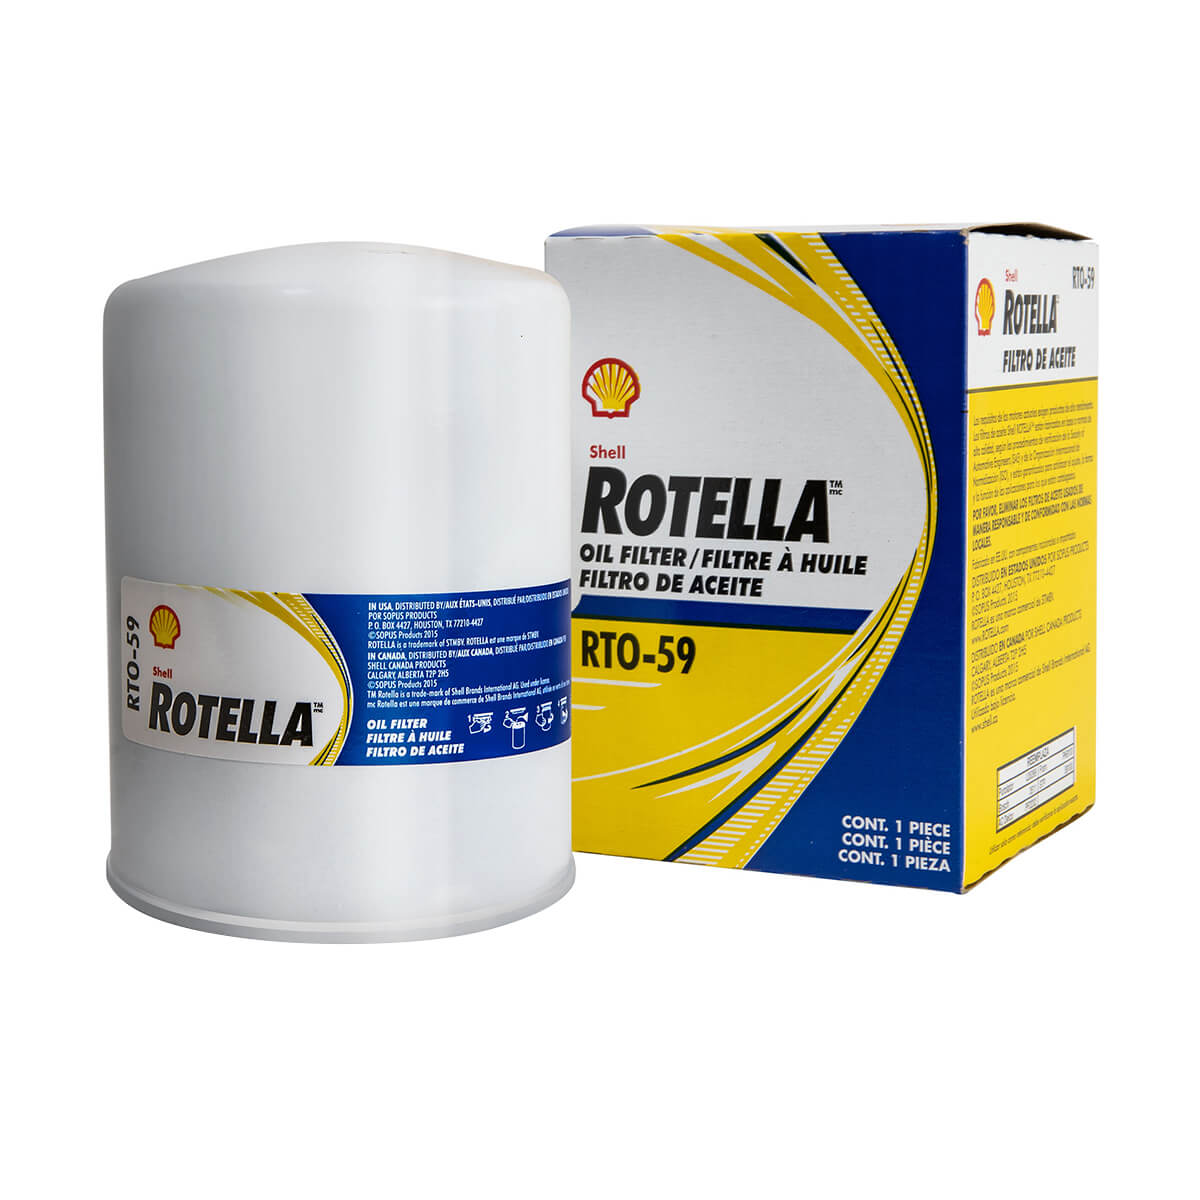 Shell Rotella RTO-59 Oil Filter